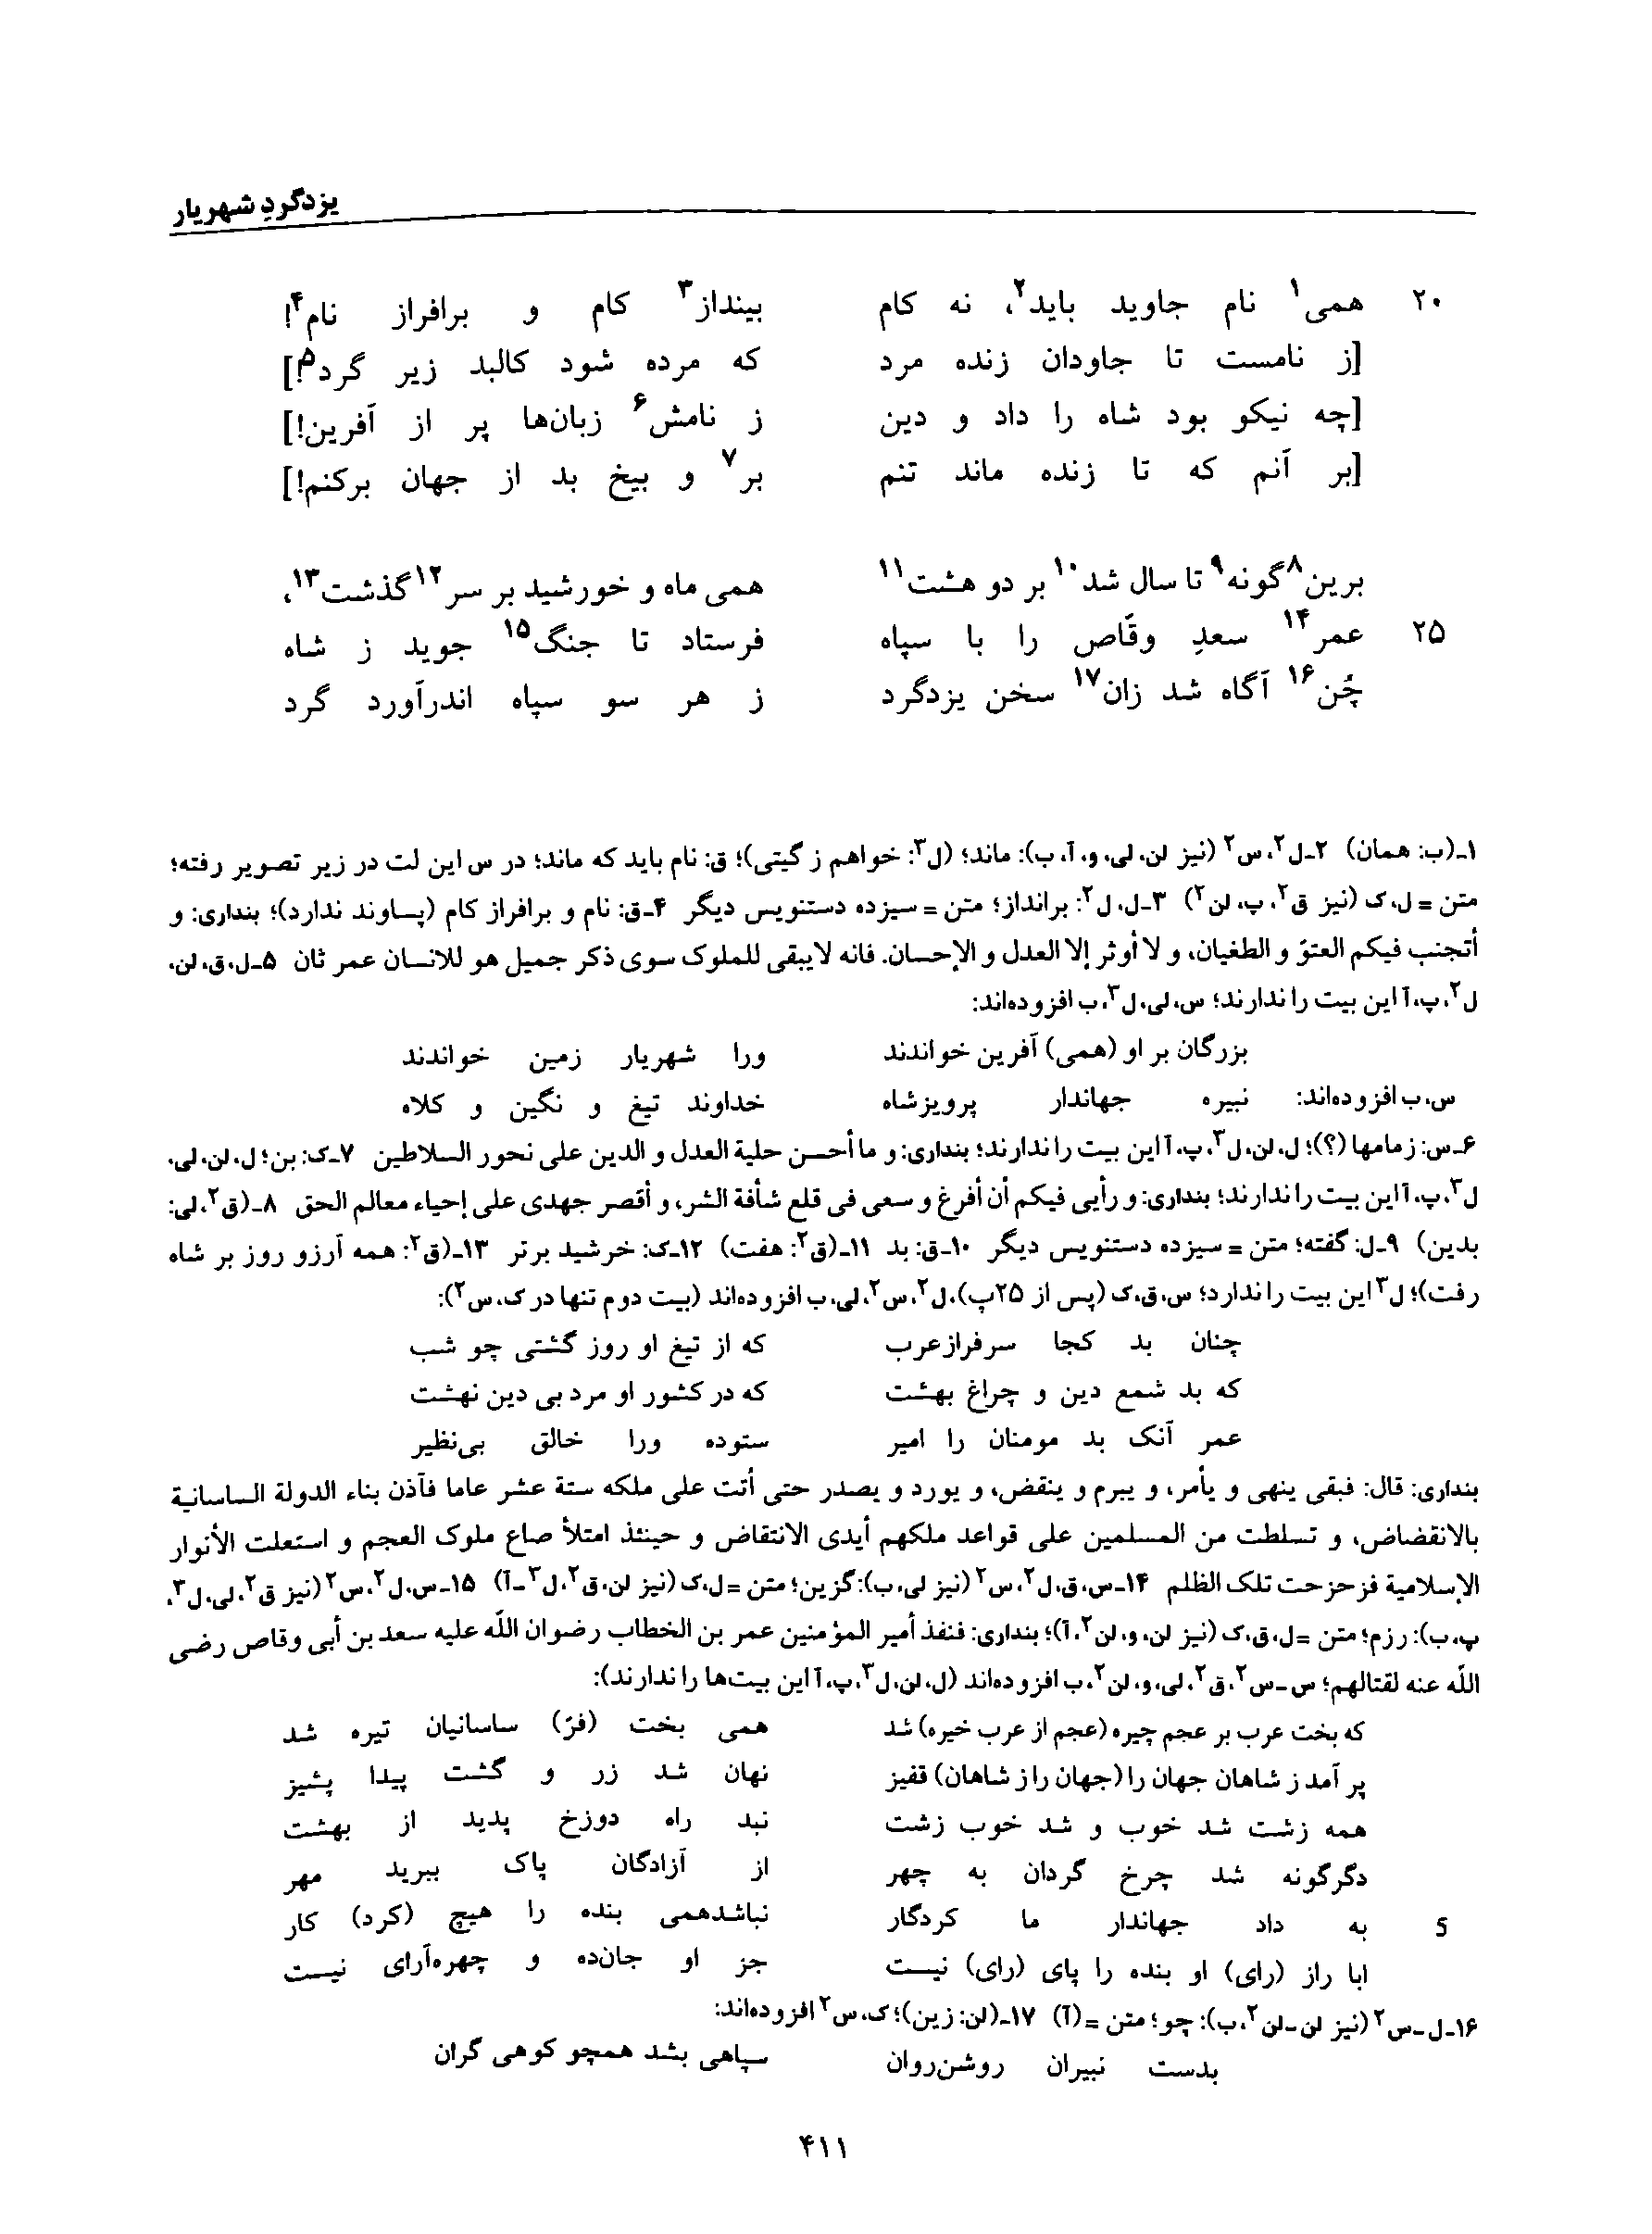 vol. 8, p. 411